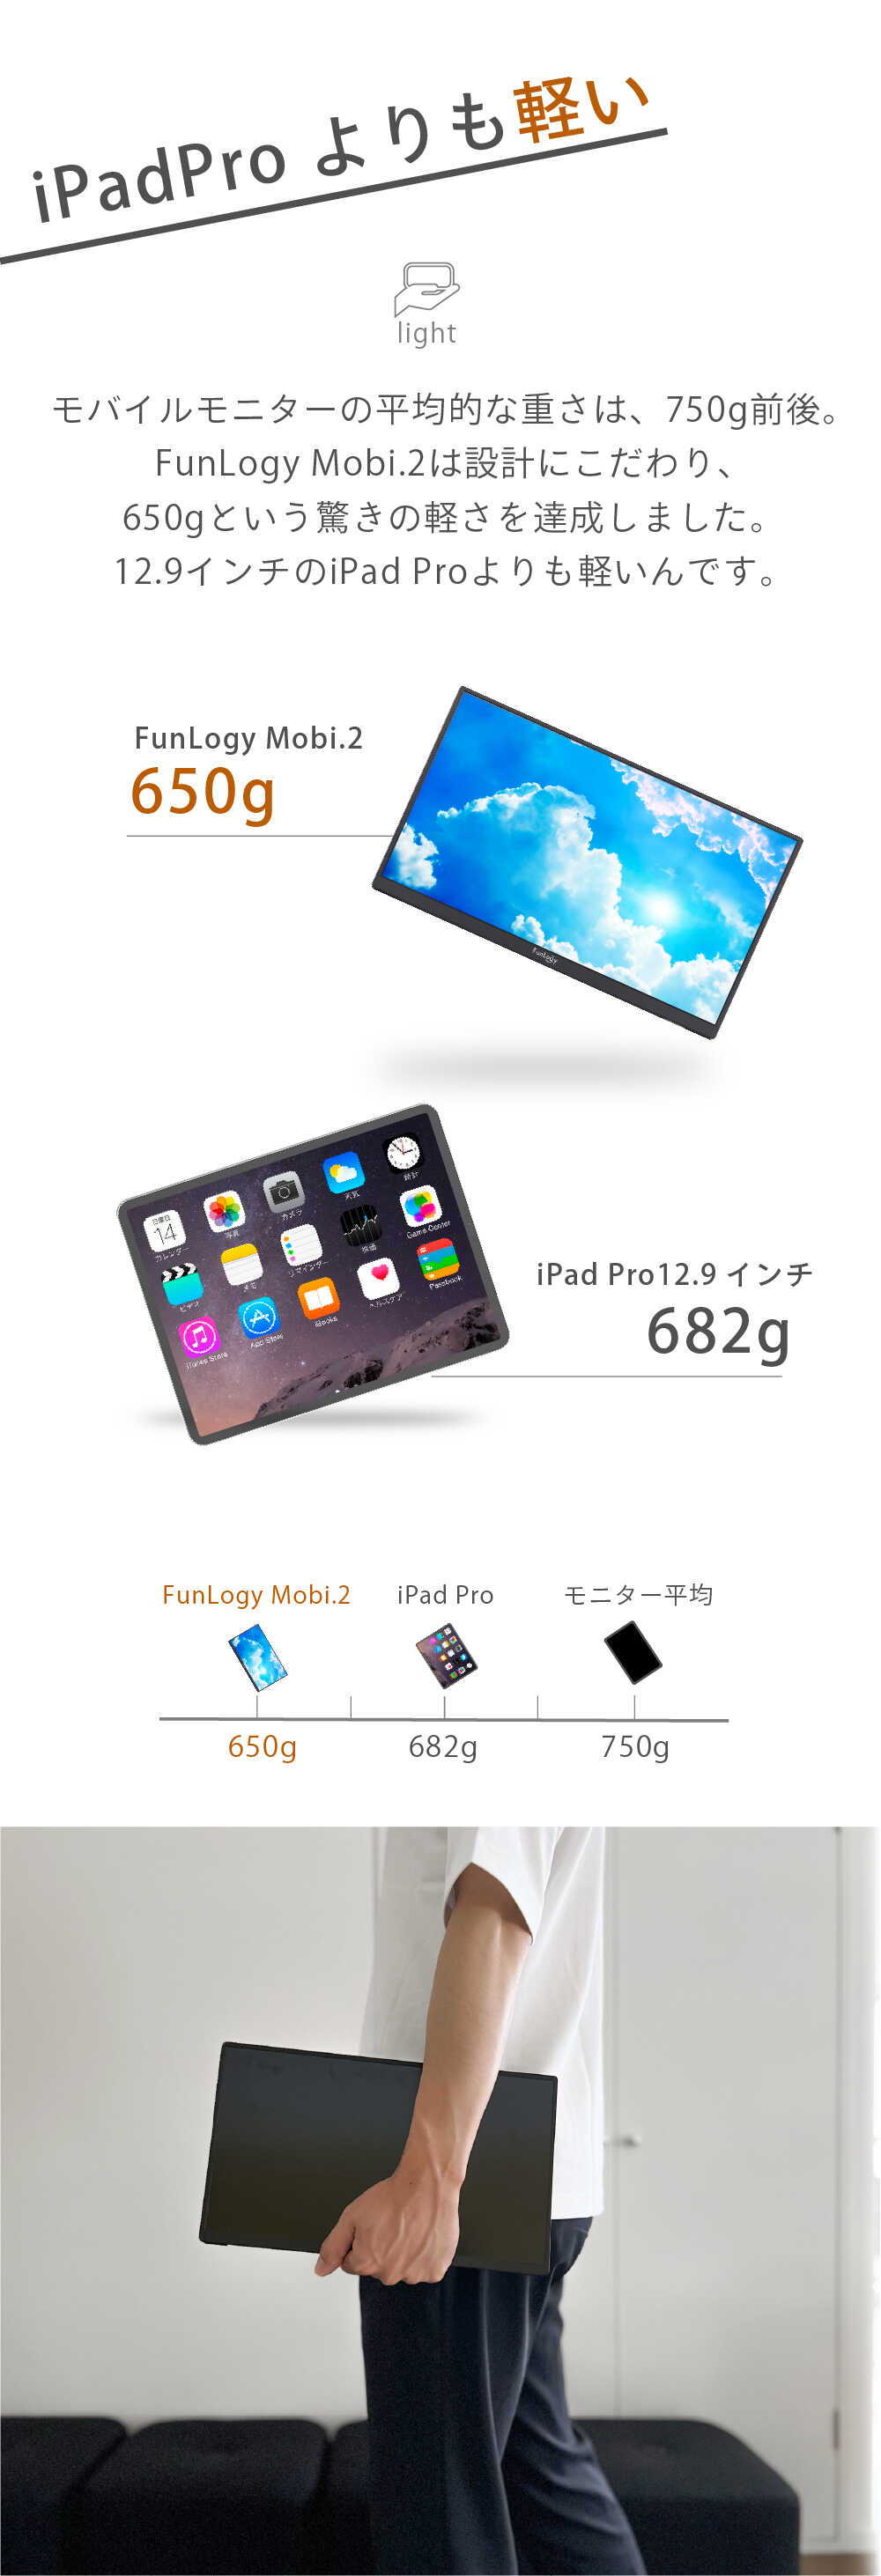 iPadPro よりも軽い light モバイルモニターの平均的な重さは、750g前後。 FunLogy Mobi.2は設計にこだわり、 650gという驚きの軽さを達成しました。 12.9インチのiPad Proよりも軽いんです。